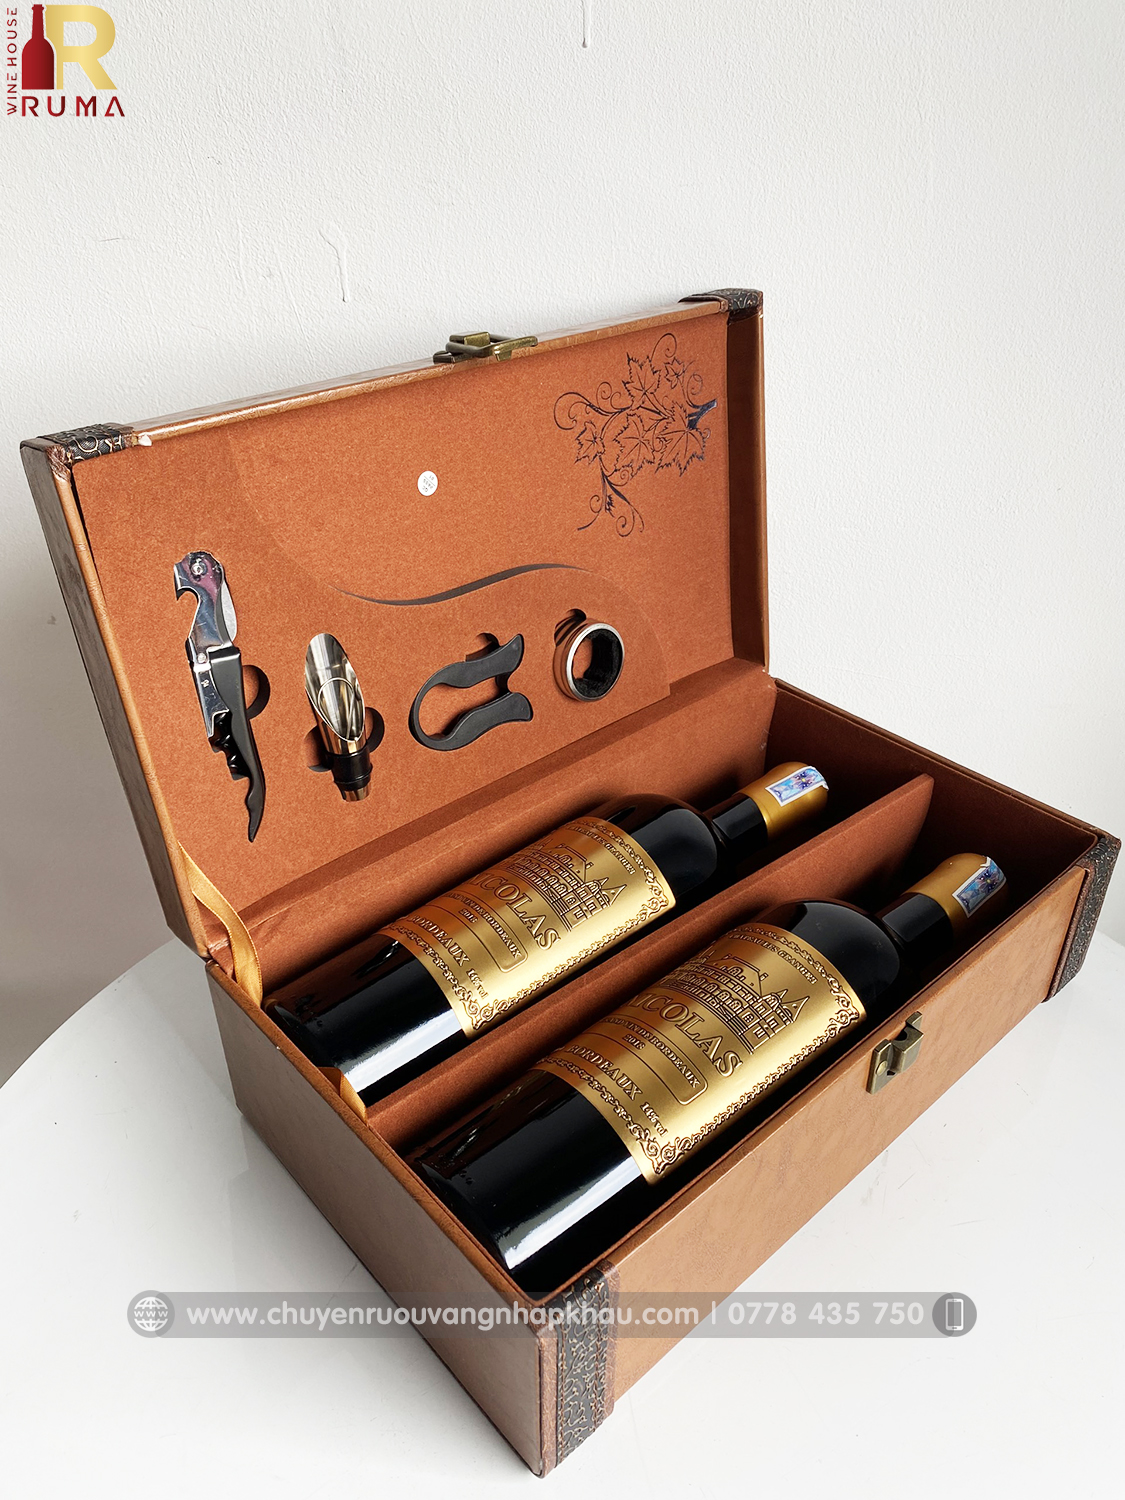 Set quà tặng hộp da 2 chai rượu vang Pháp Nicolas kèm bộ phụ kiện